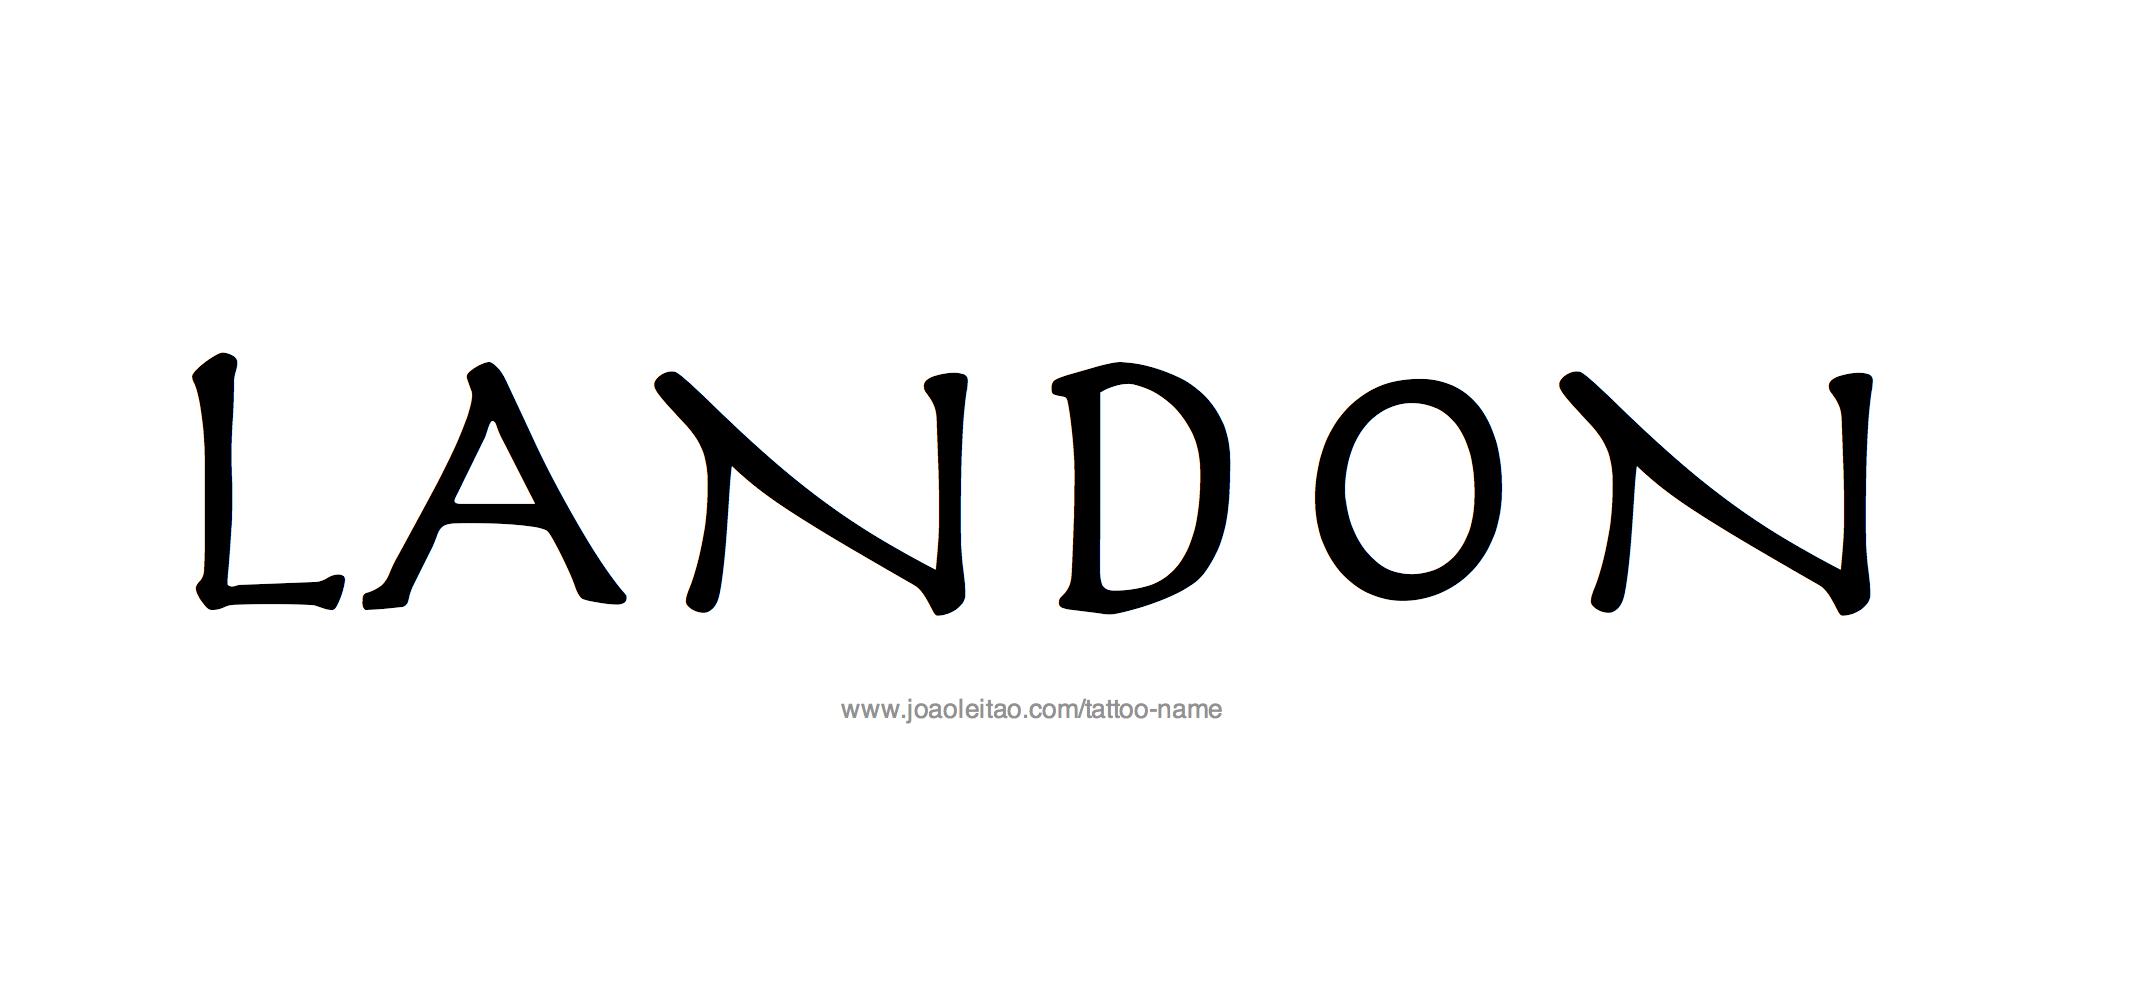 Landon Name Tattoo Designs.